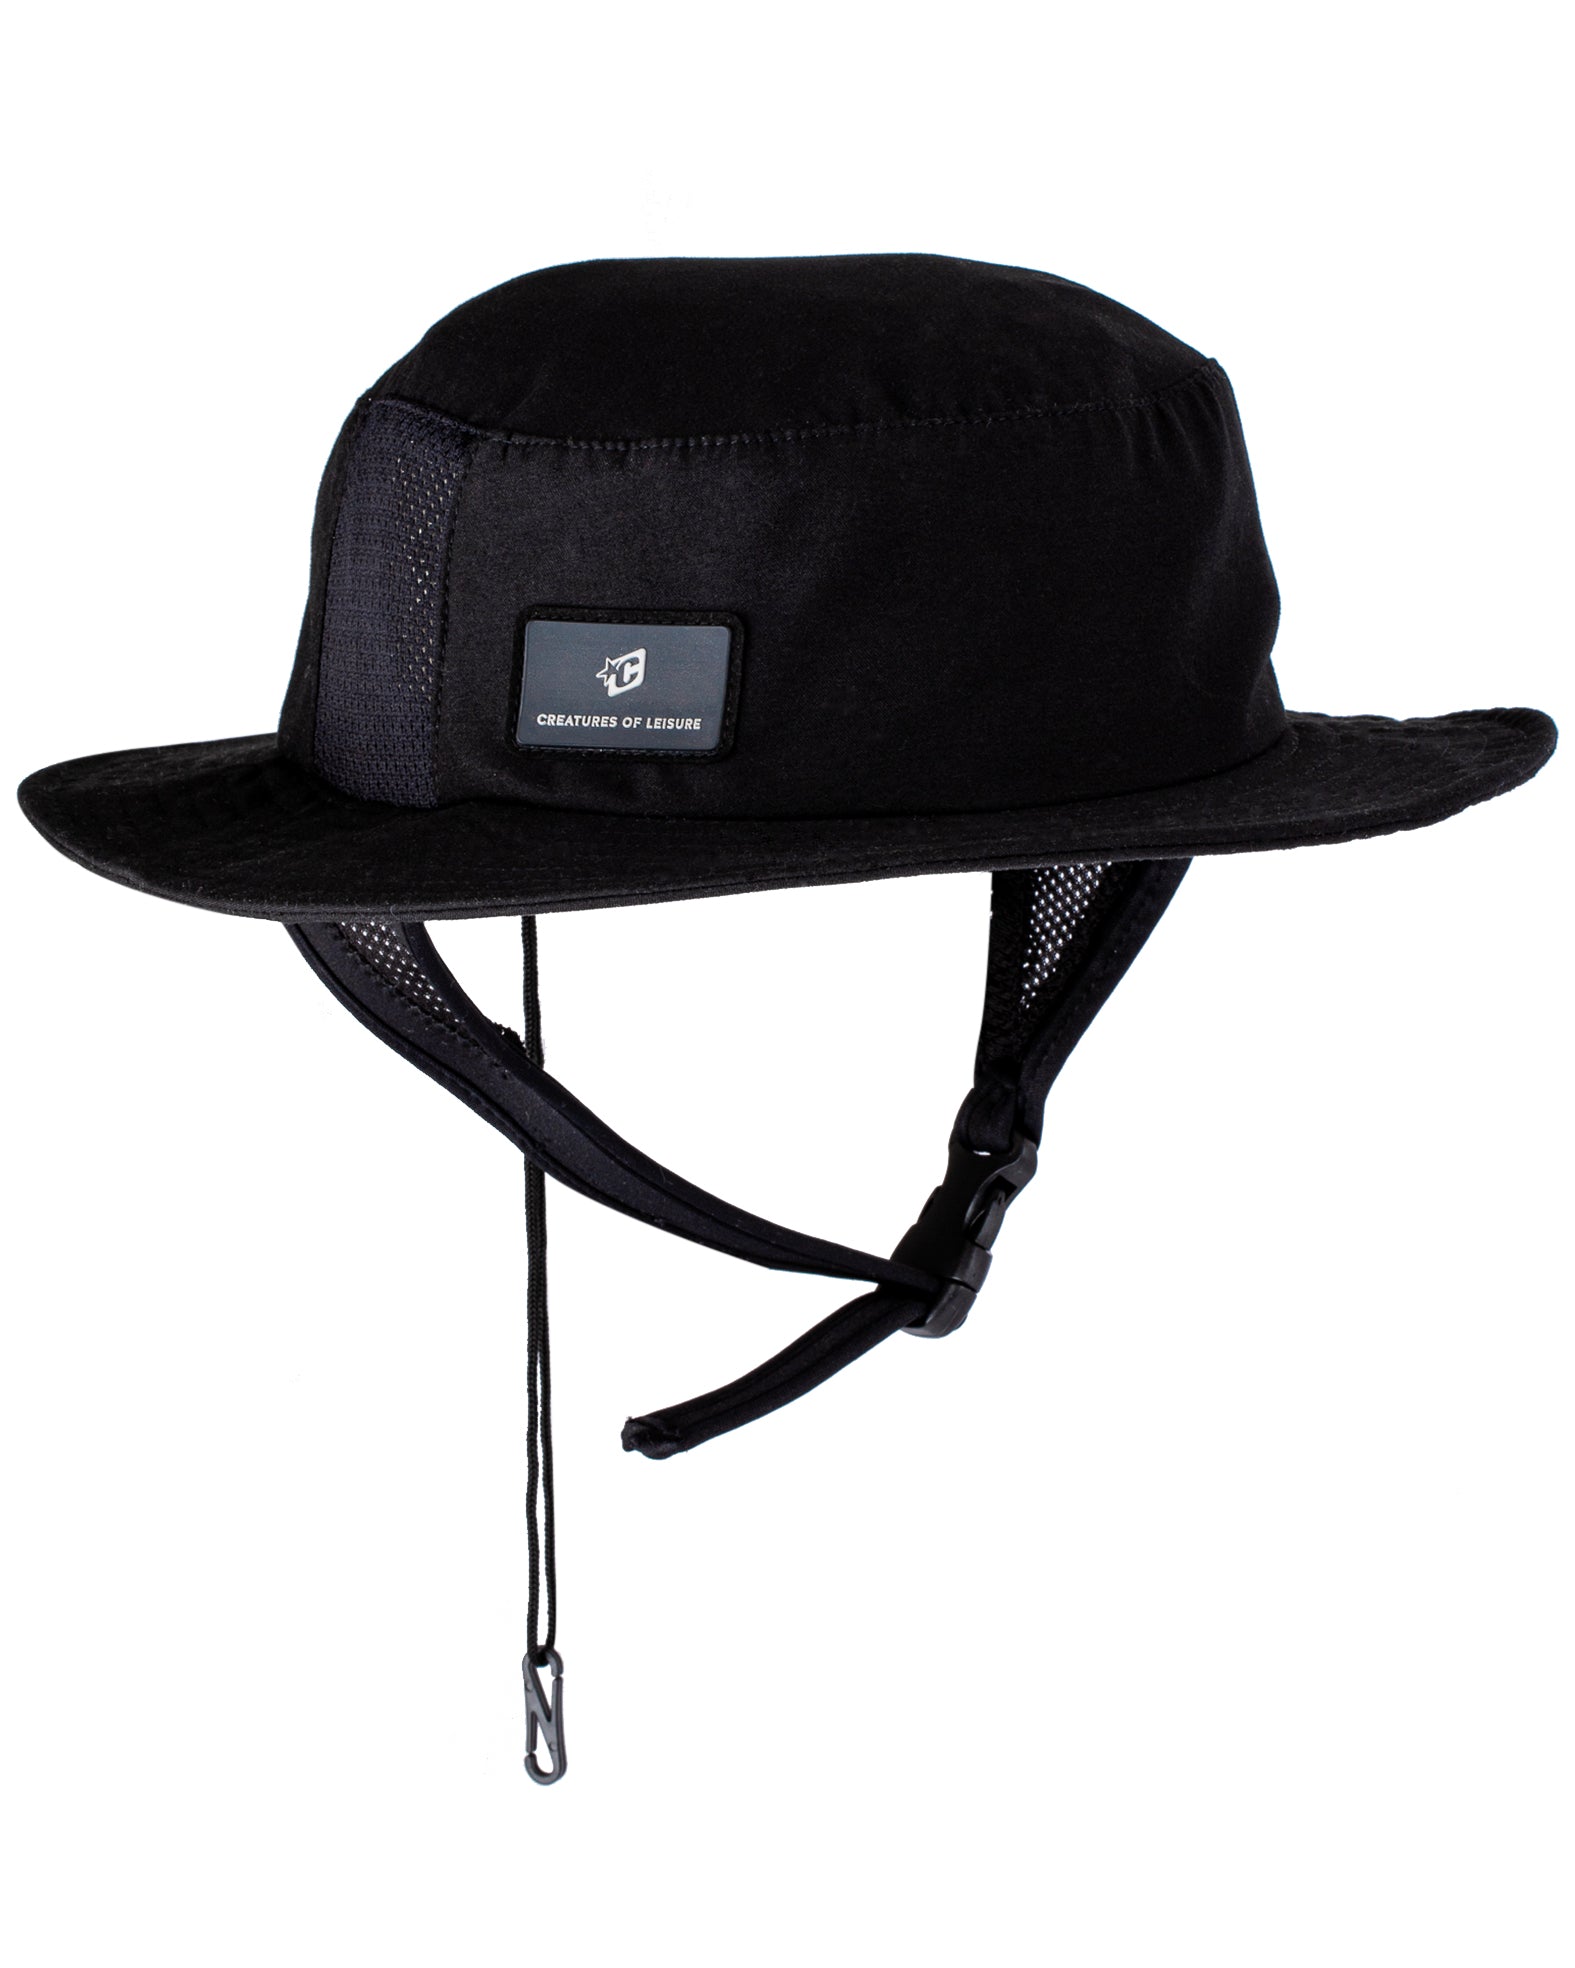 Rip Curl Surf Series Bucket Hat - Black - L/XL